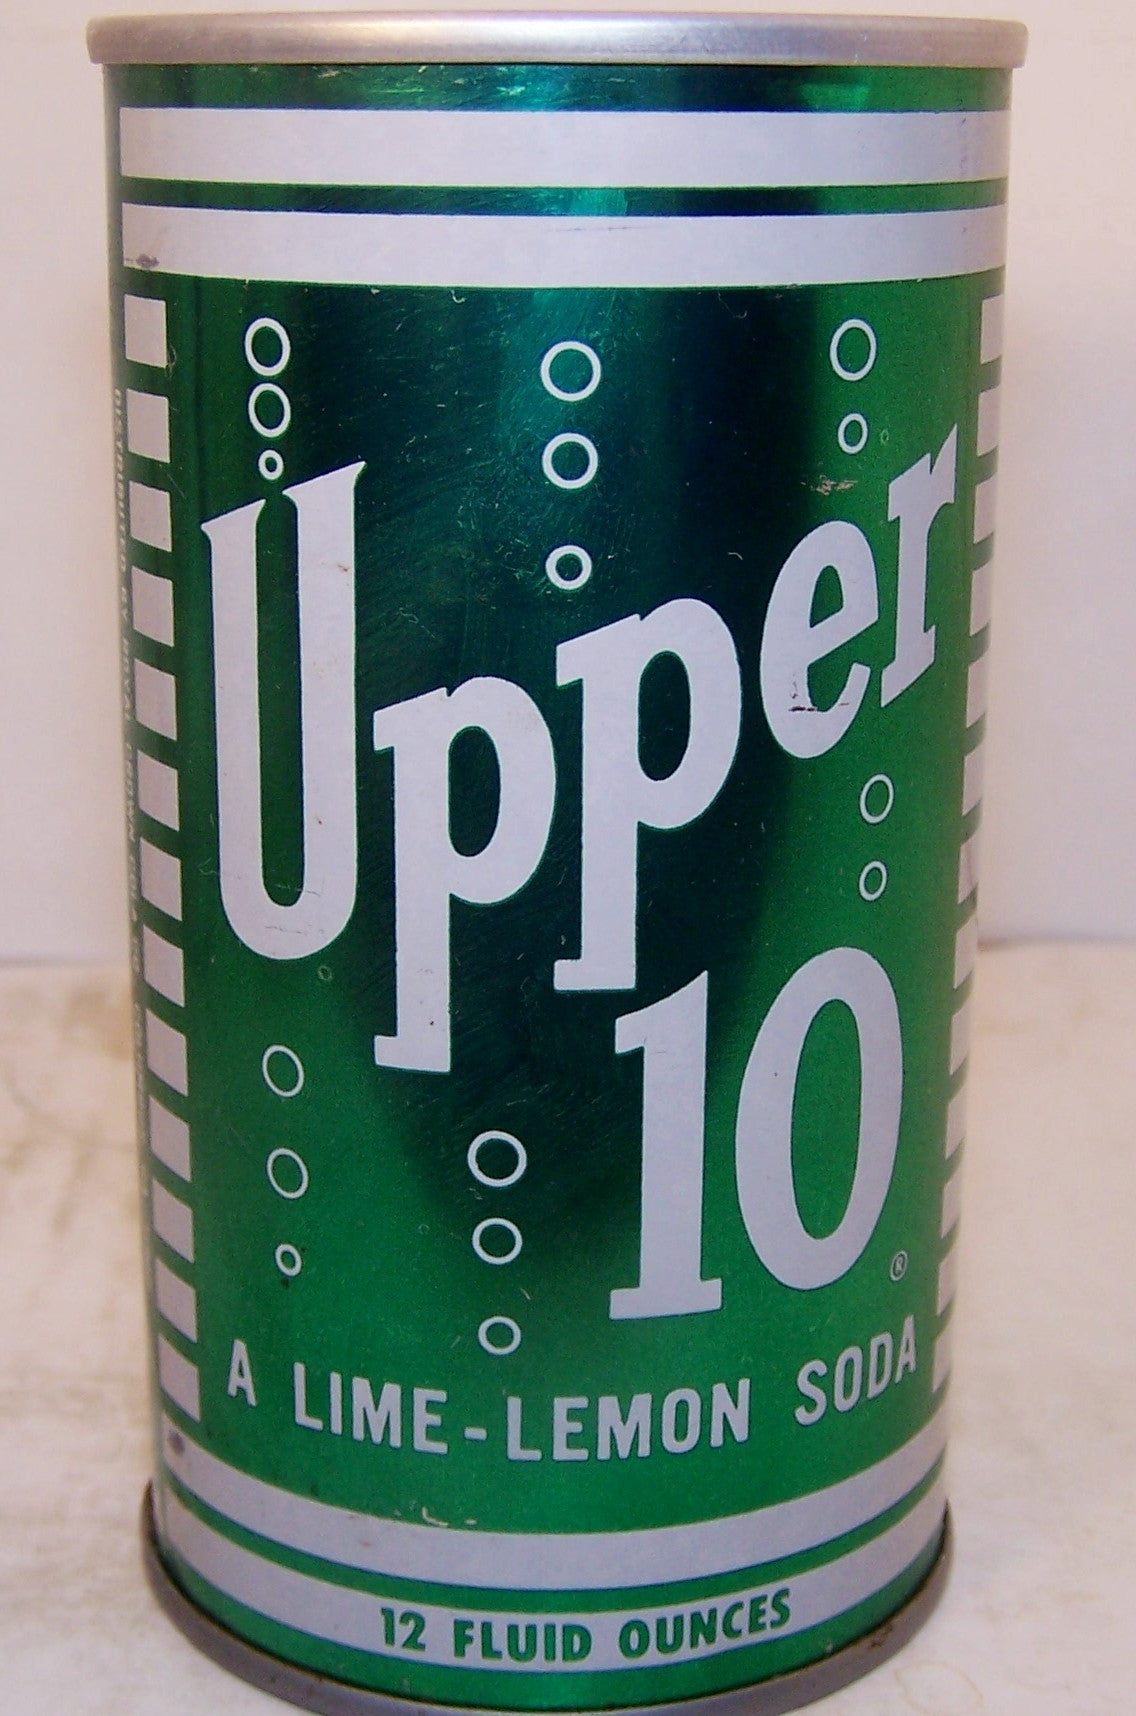 Upper 10 lime-lemon soda, not in 2007 book, Grade A1+